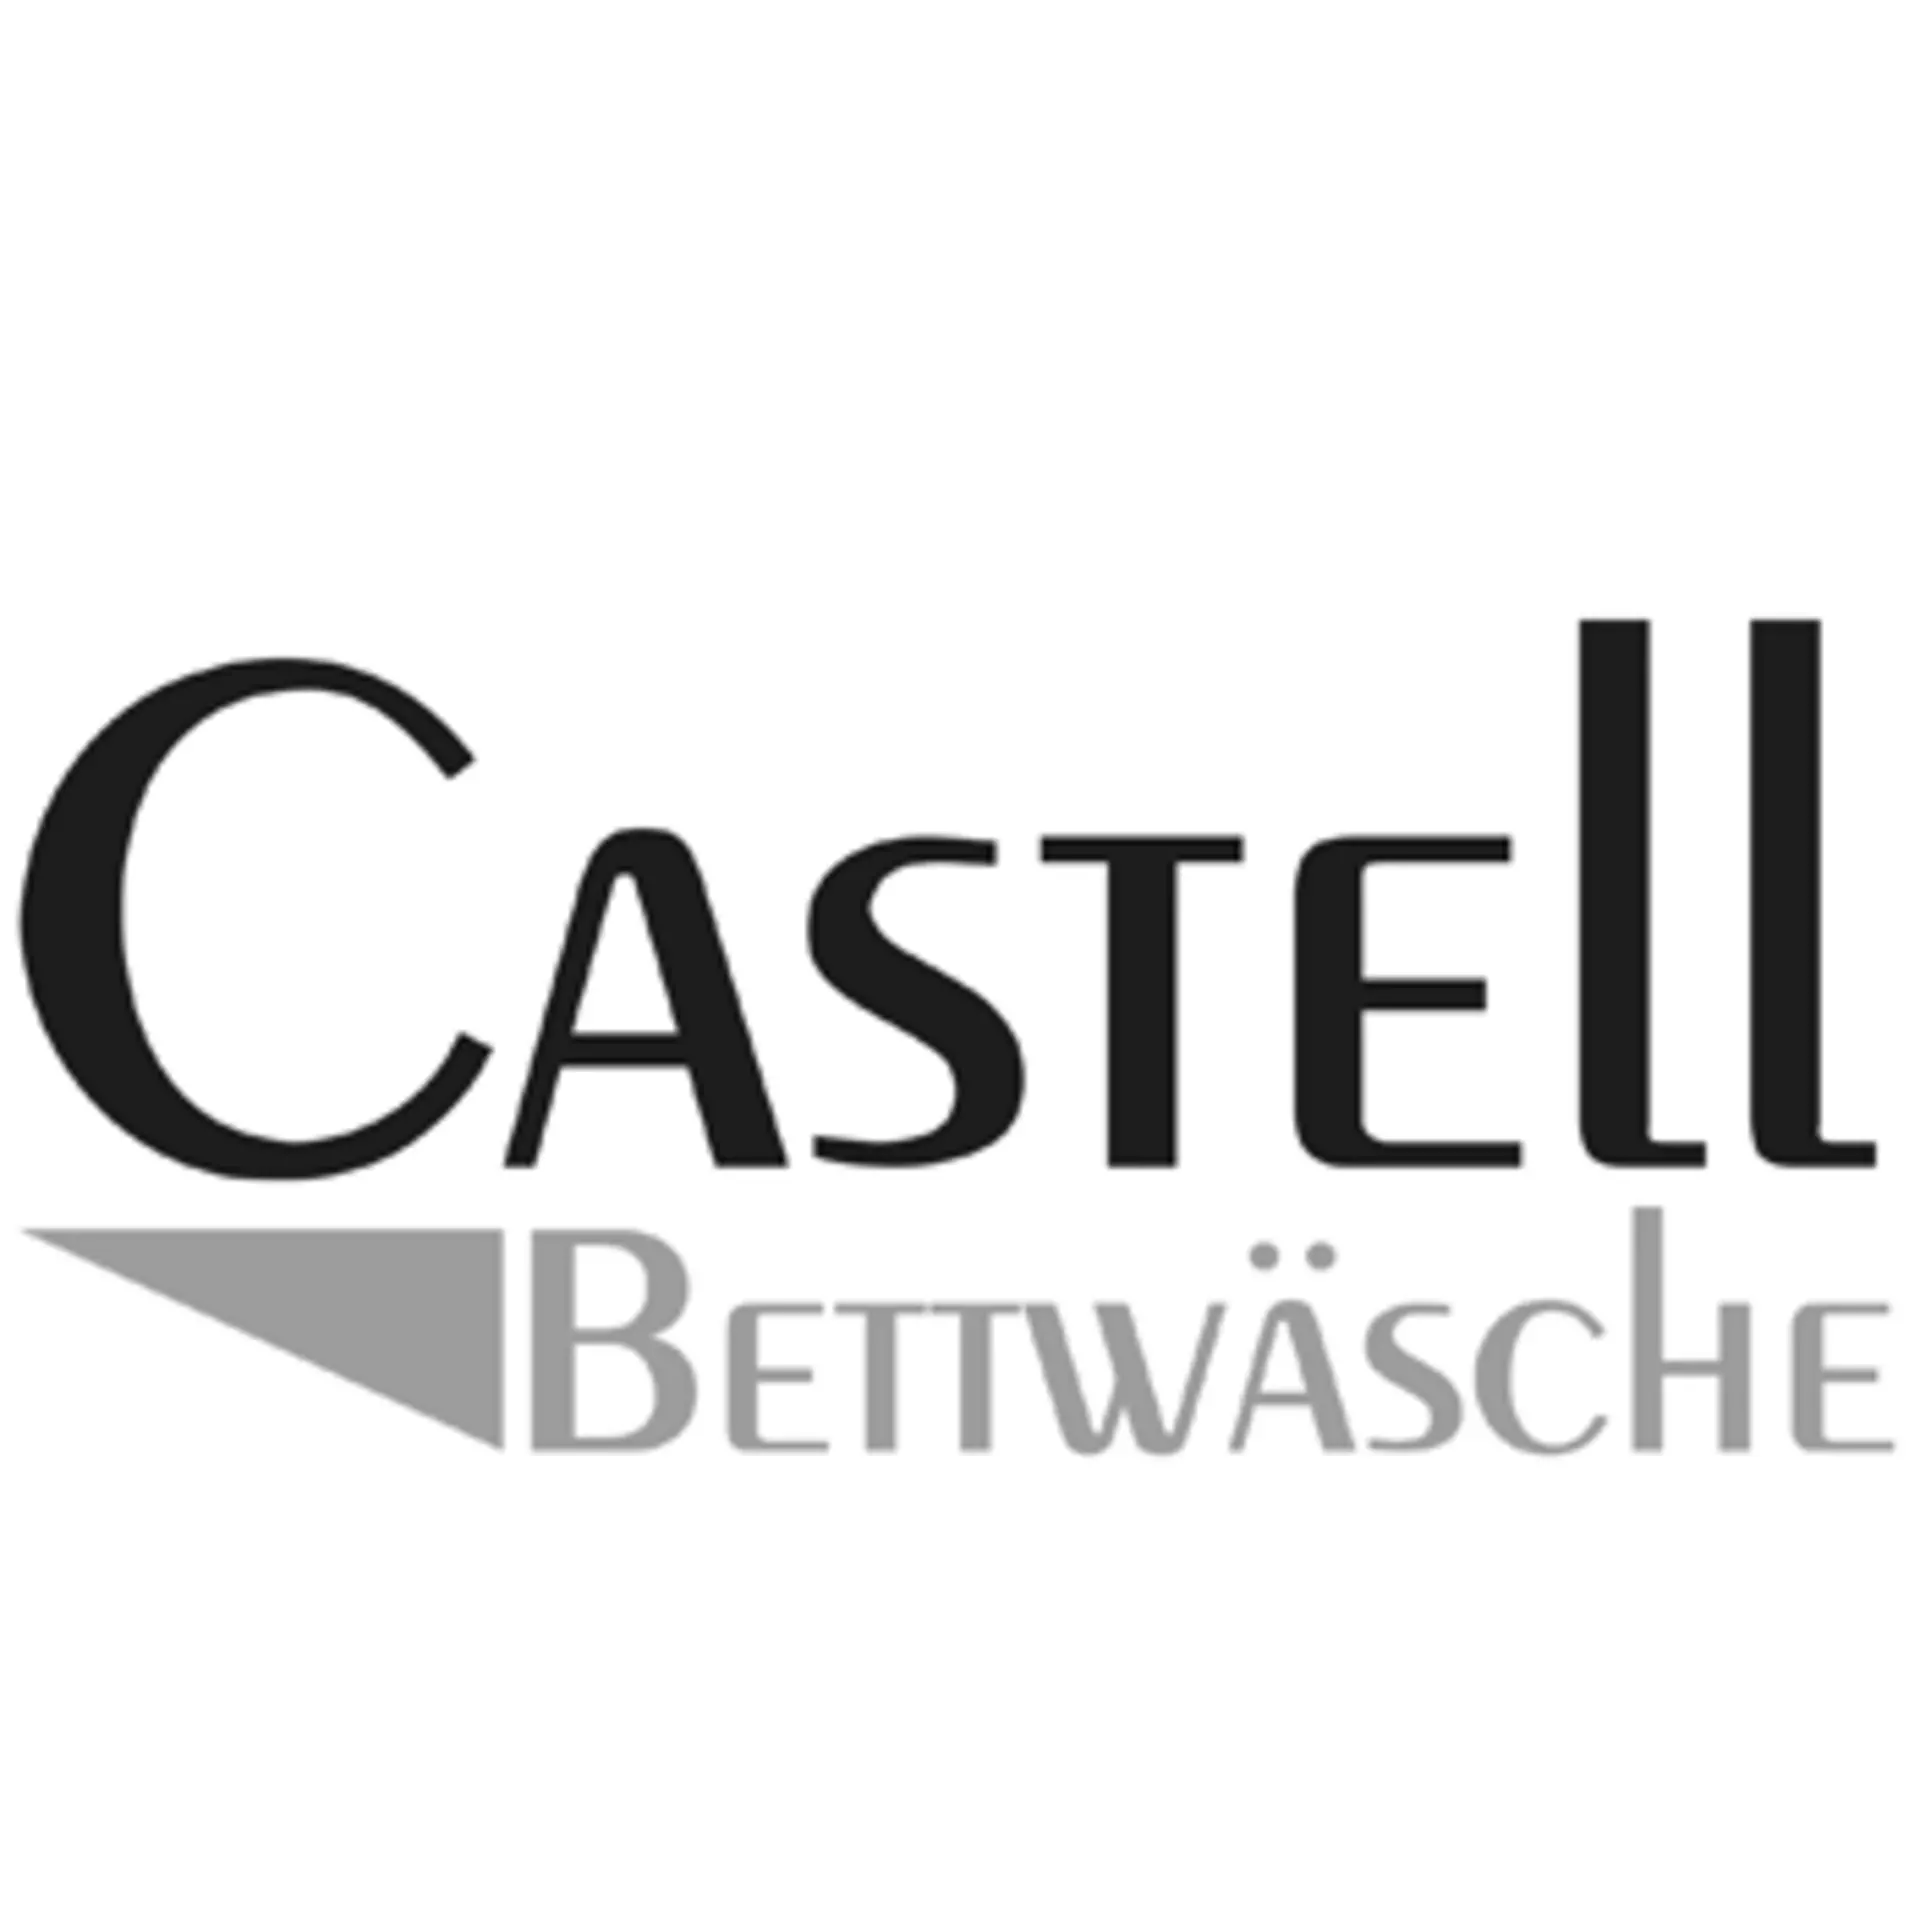 Castell Logo